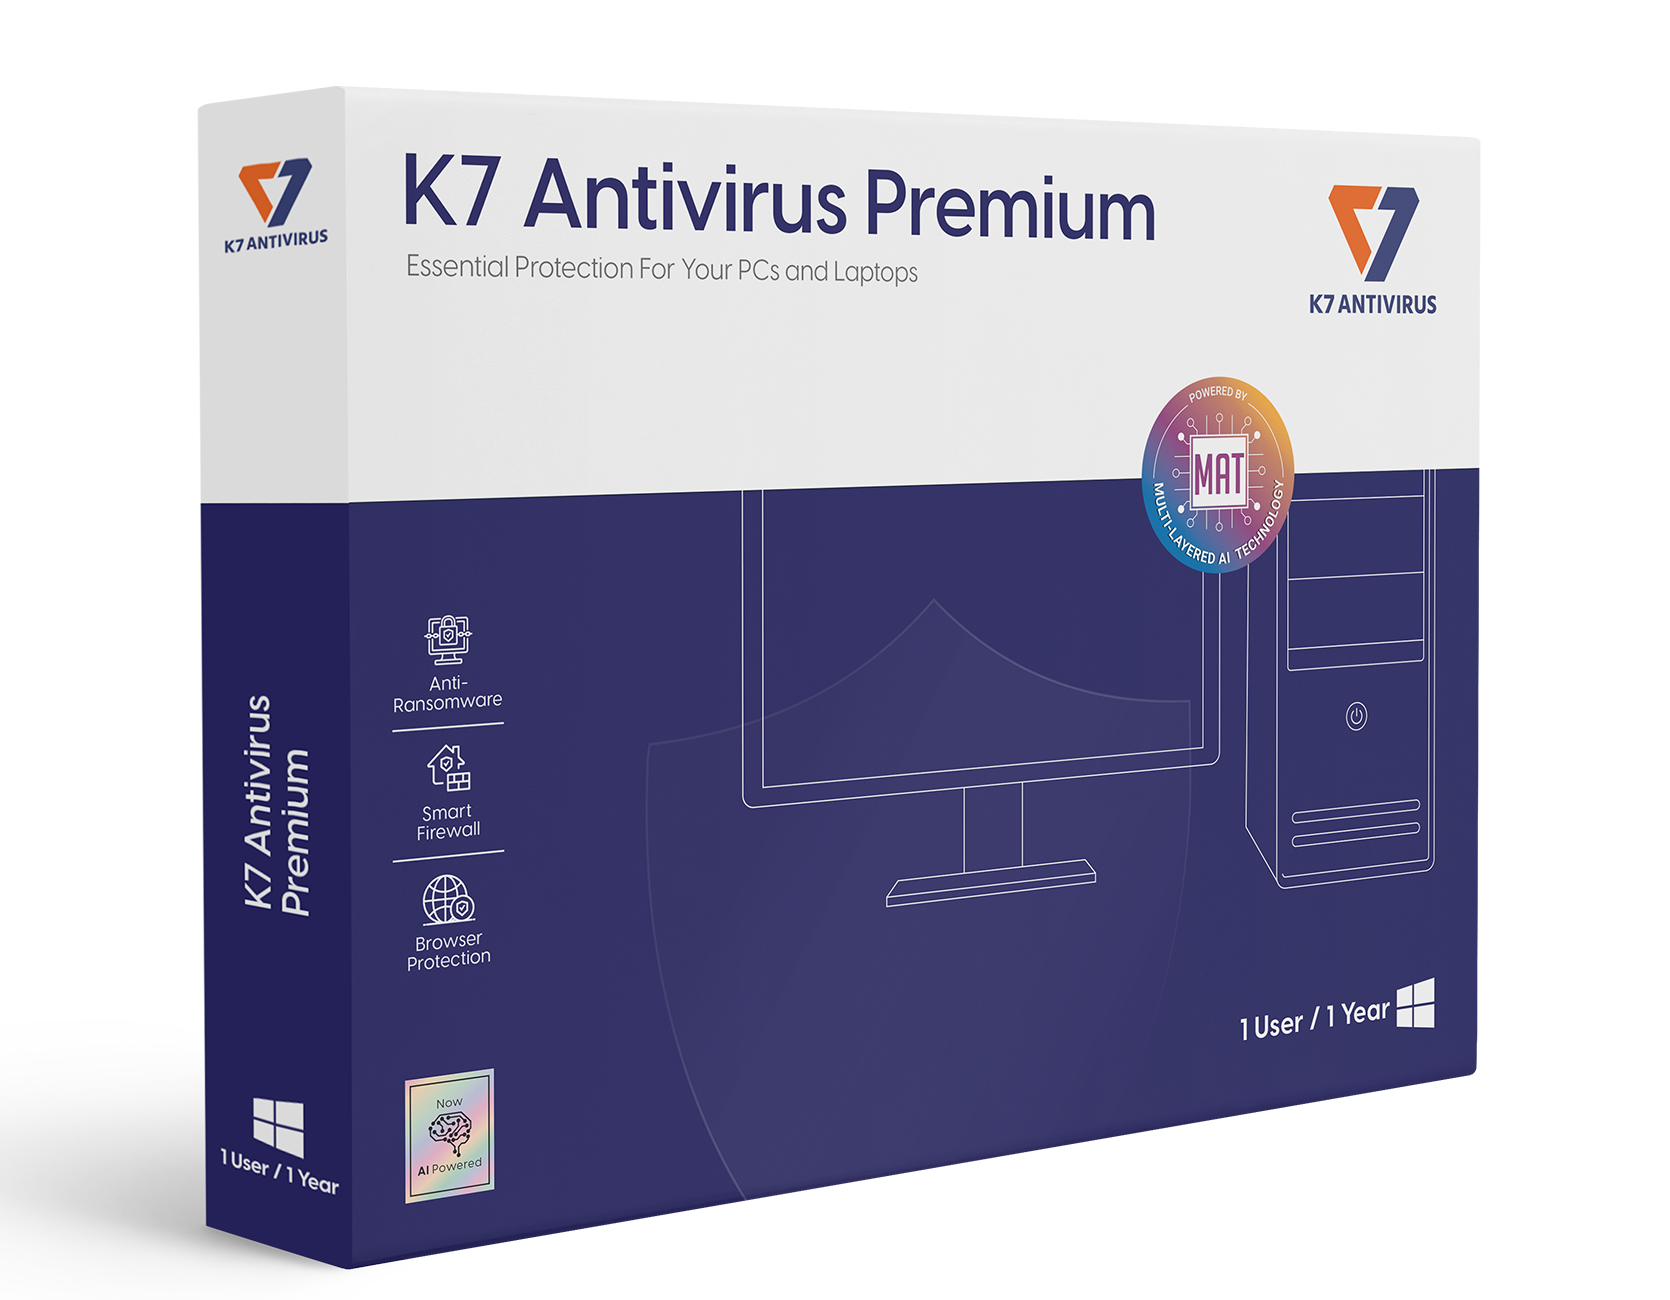 برنامج K7 Antivirus Premium كامل للكمبيوتر